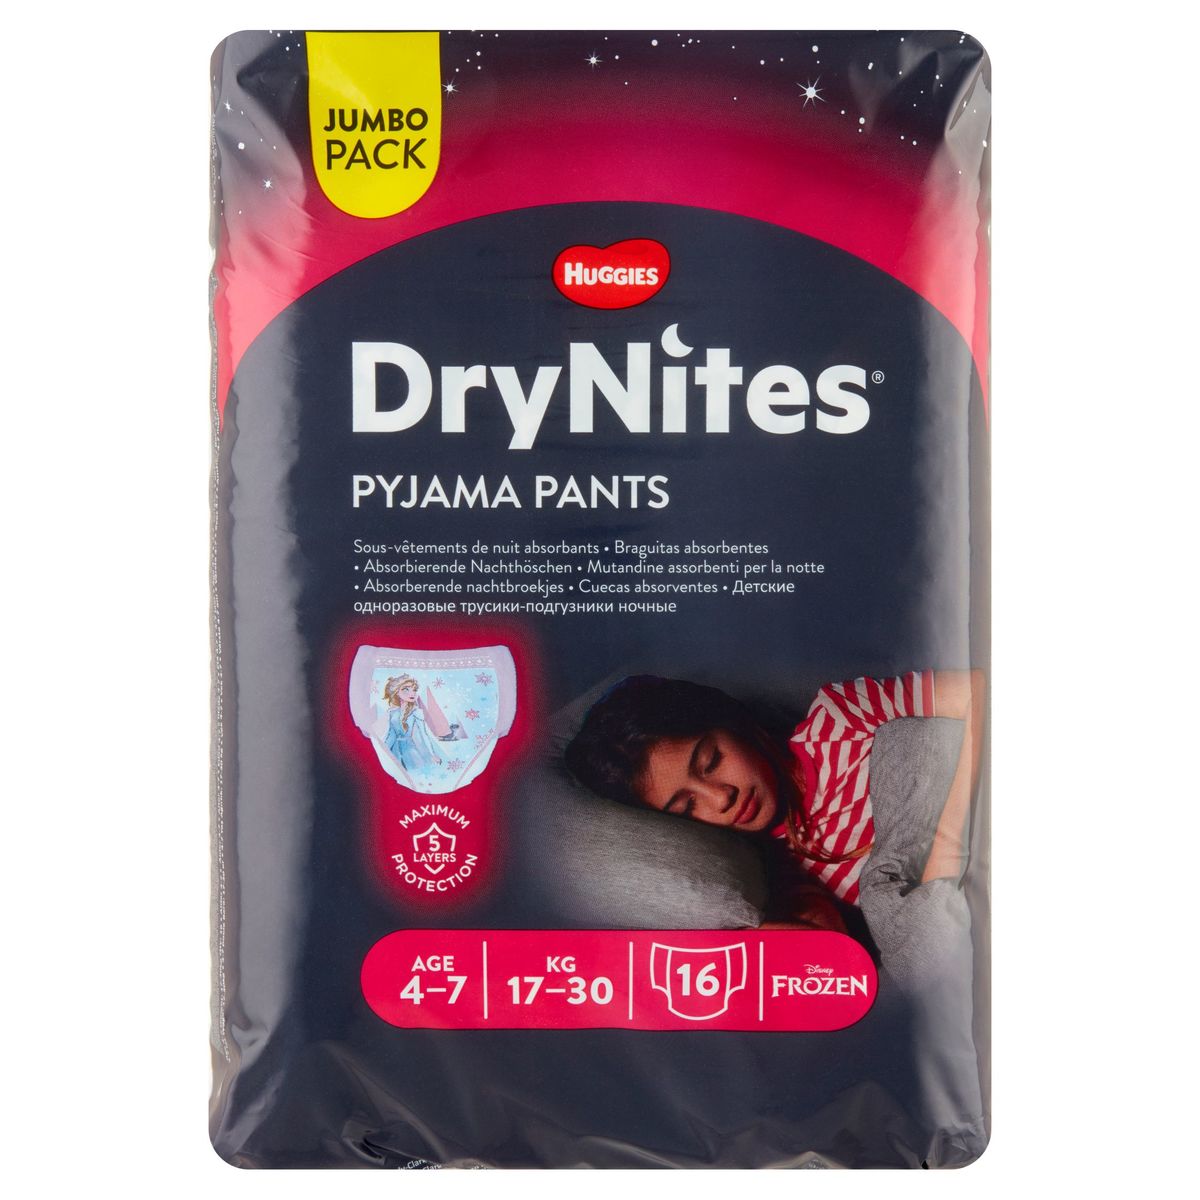 Huggies Drynites Absorberende Nachtbroekjes Age 4-7 17-30kg 16 Stuks